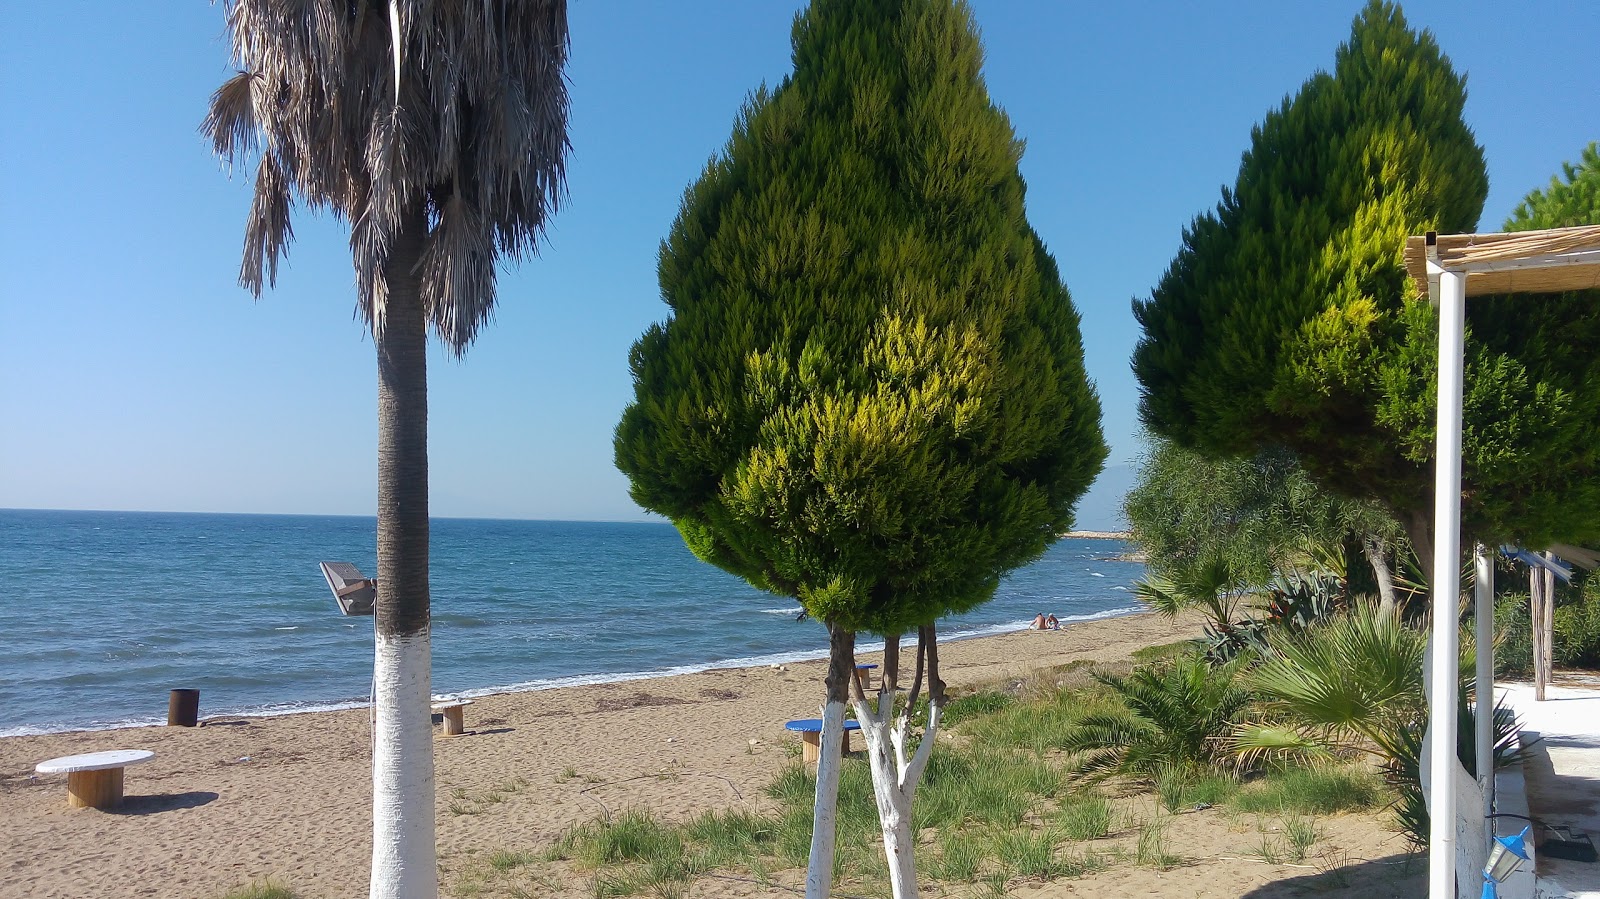 Gulbahce beach IV'in fotoğrafı koyu mavi su yüzey ile